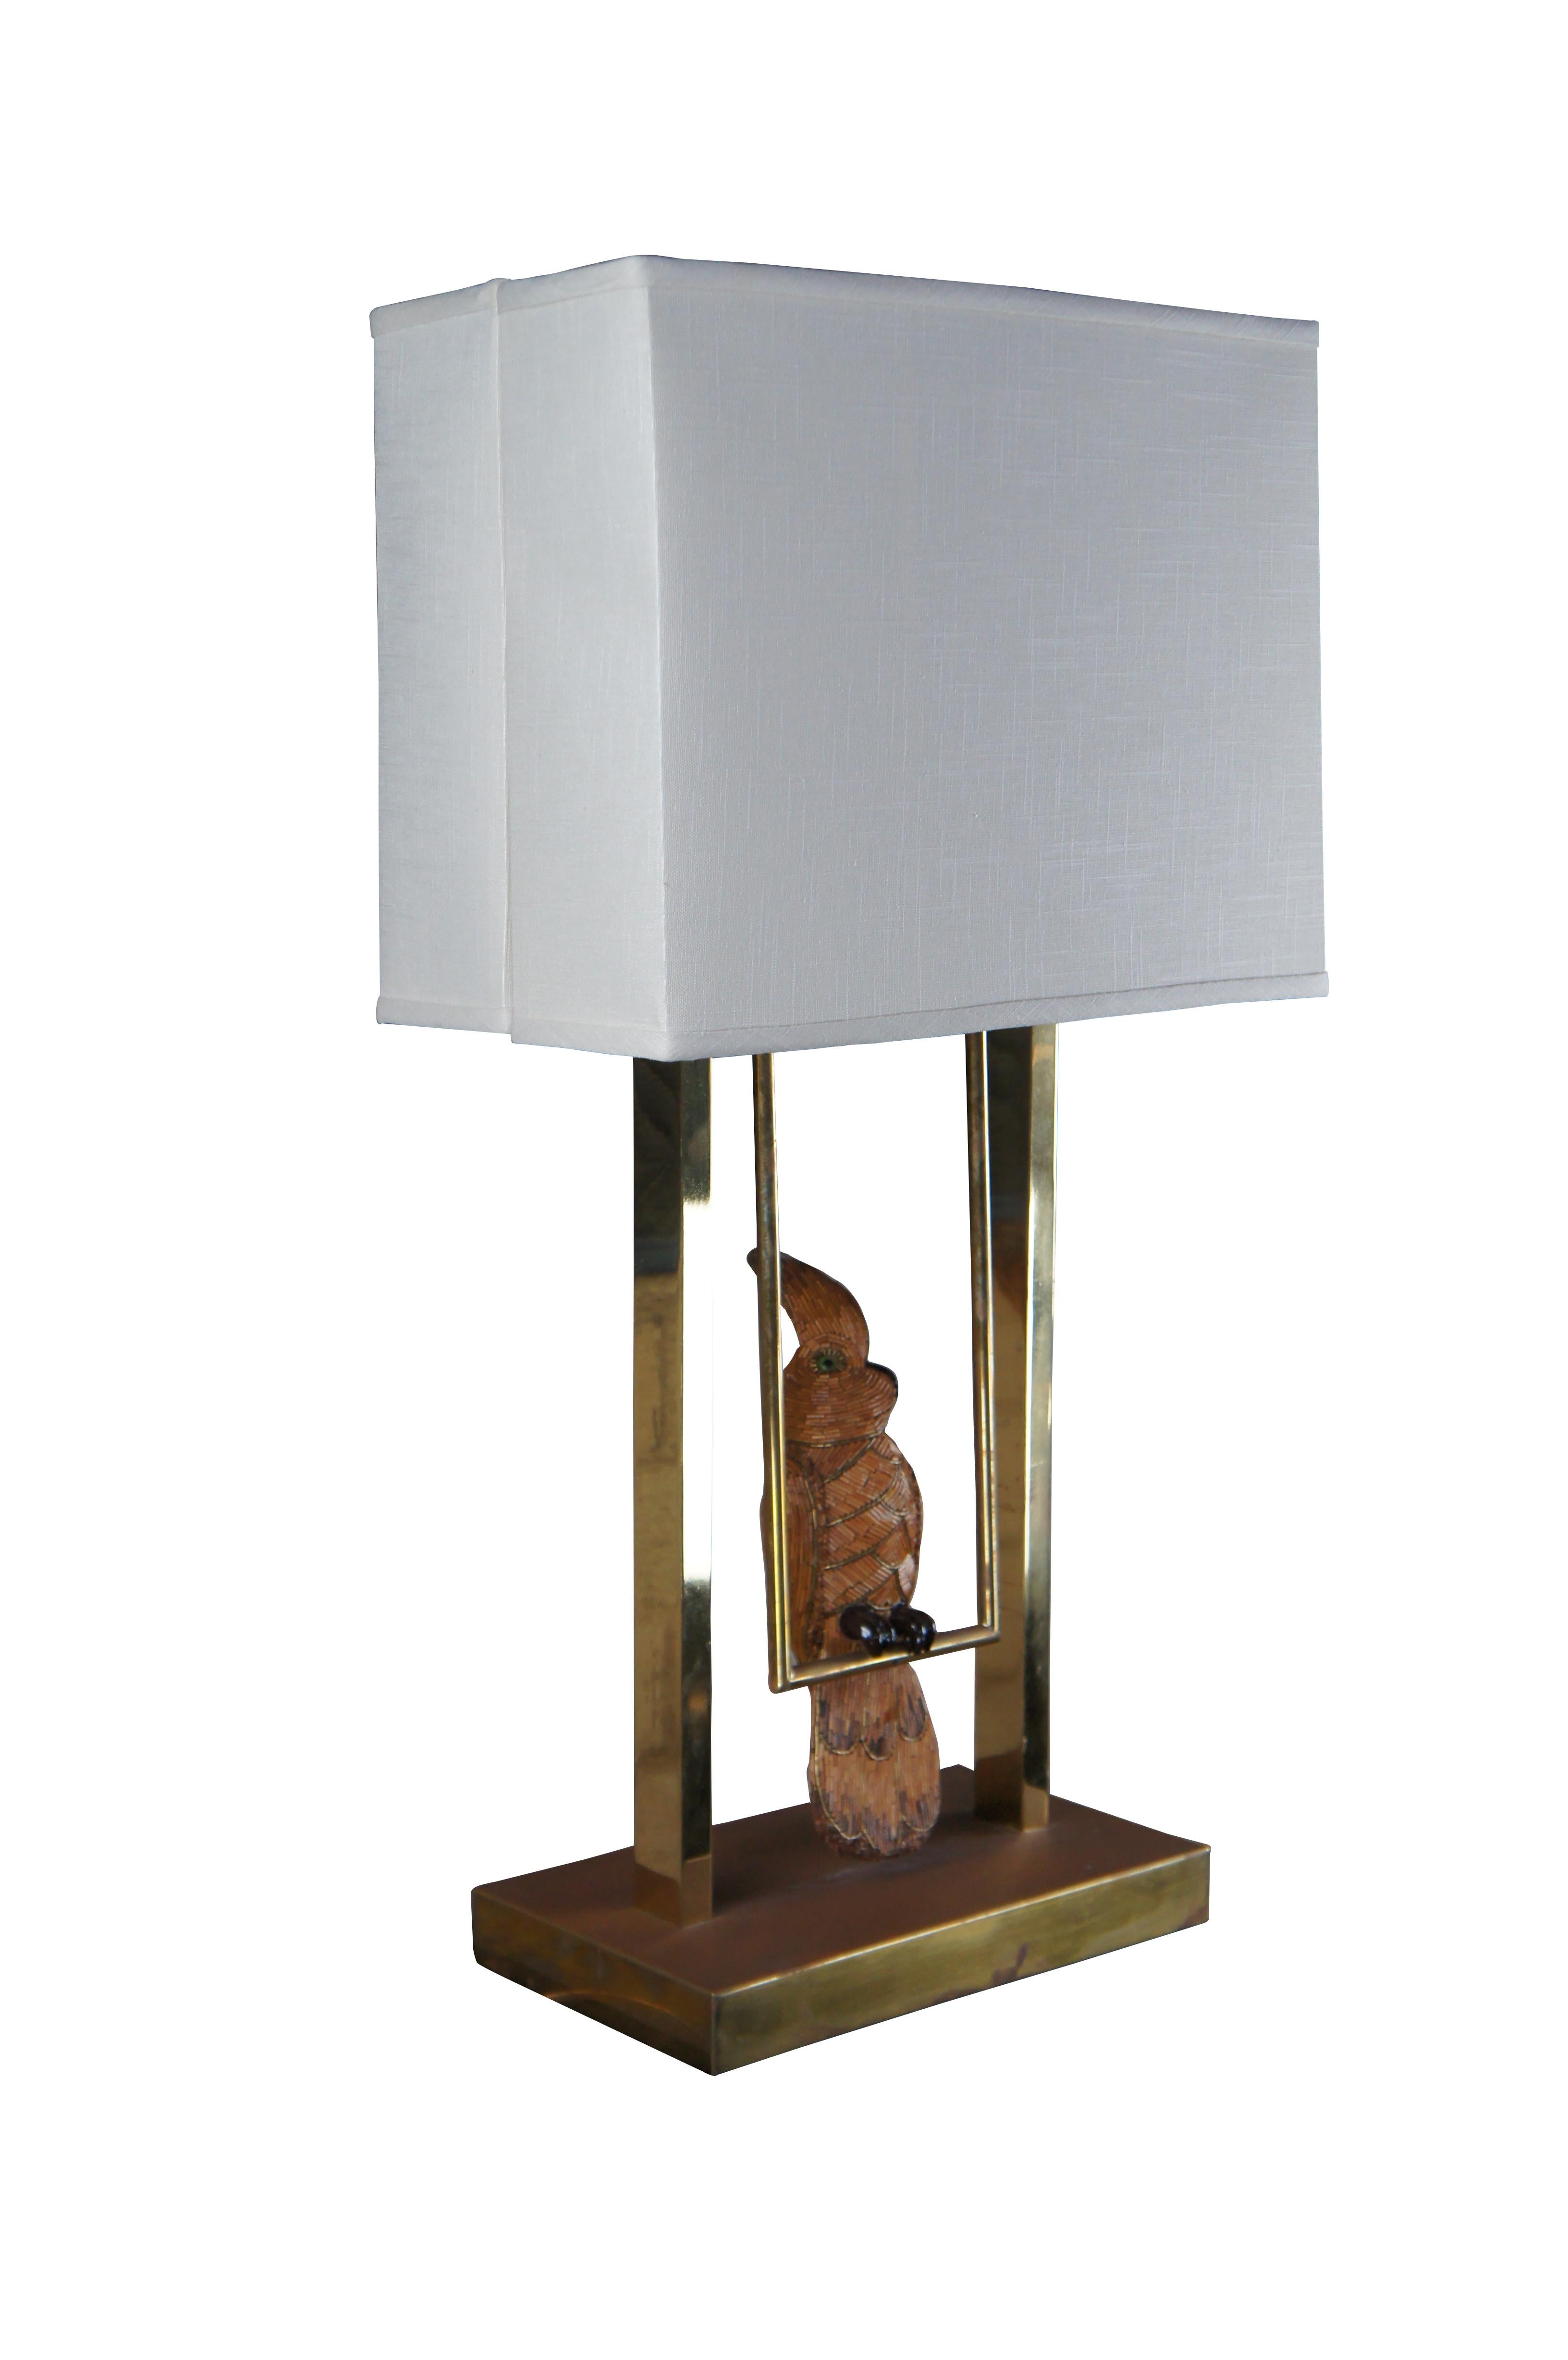 Seltene Mid Century Französisch Cockatoo / Macaw / Papagei Lampe. Der Kakadu ist mit Perlen versehen und auf einer funktionierenden Schaukel montiert. Inklusive Original Mid Century Leinenschirm

Abmessungen:
8